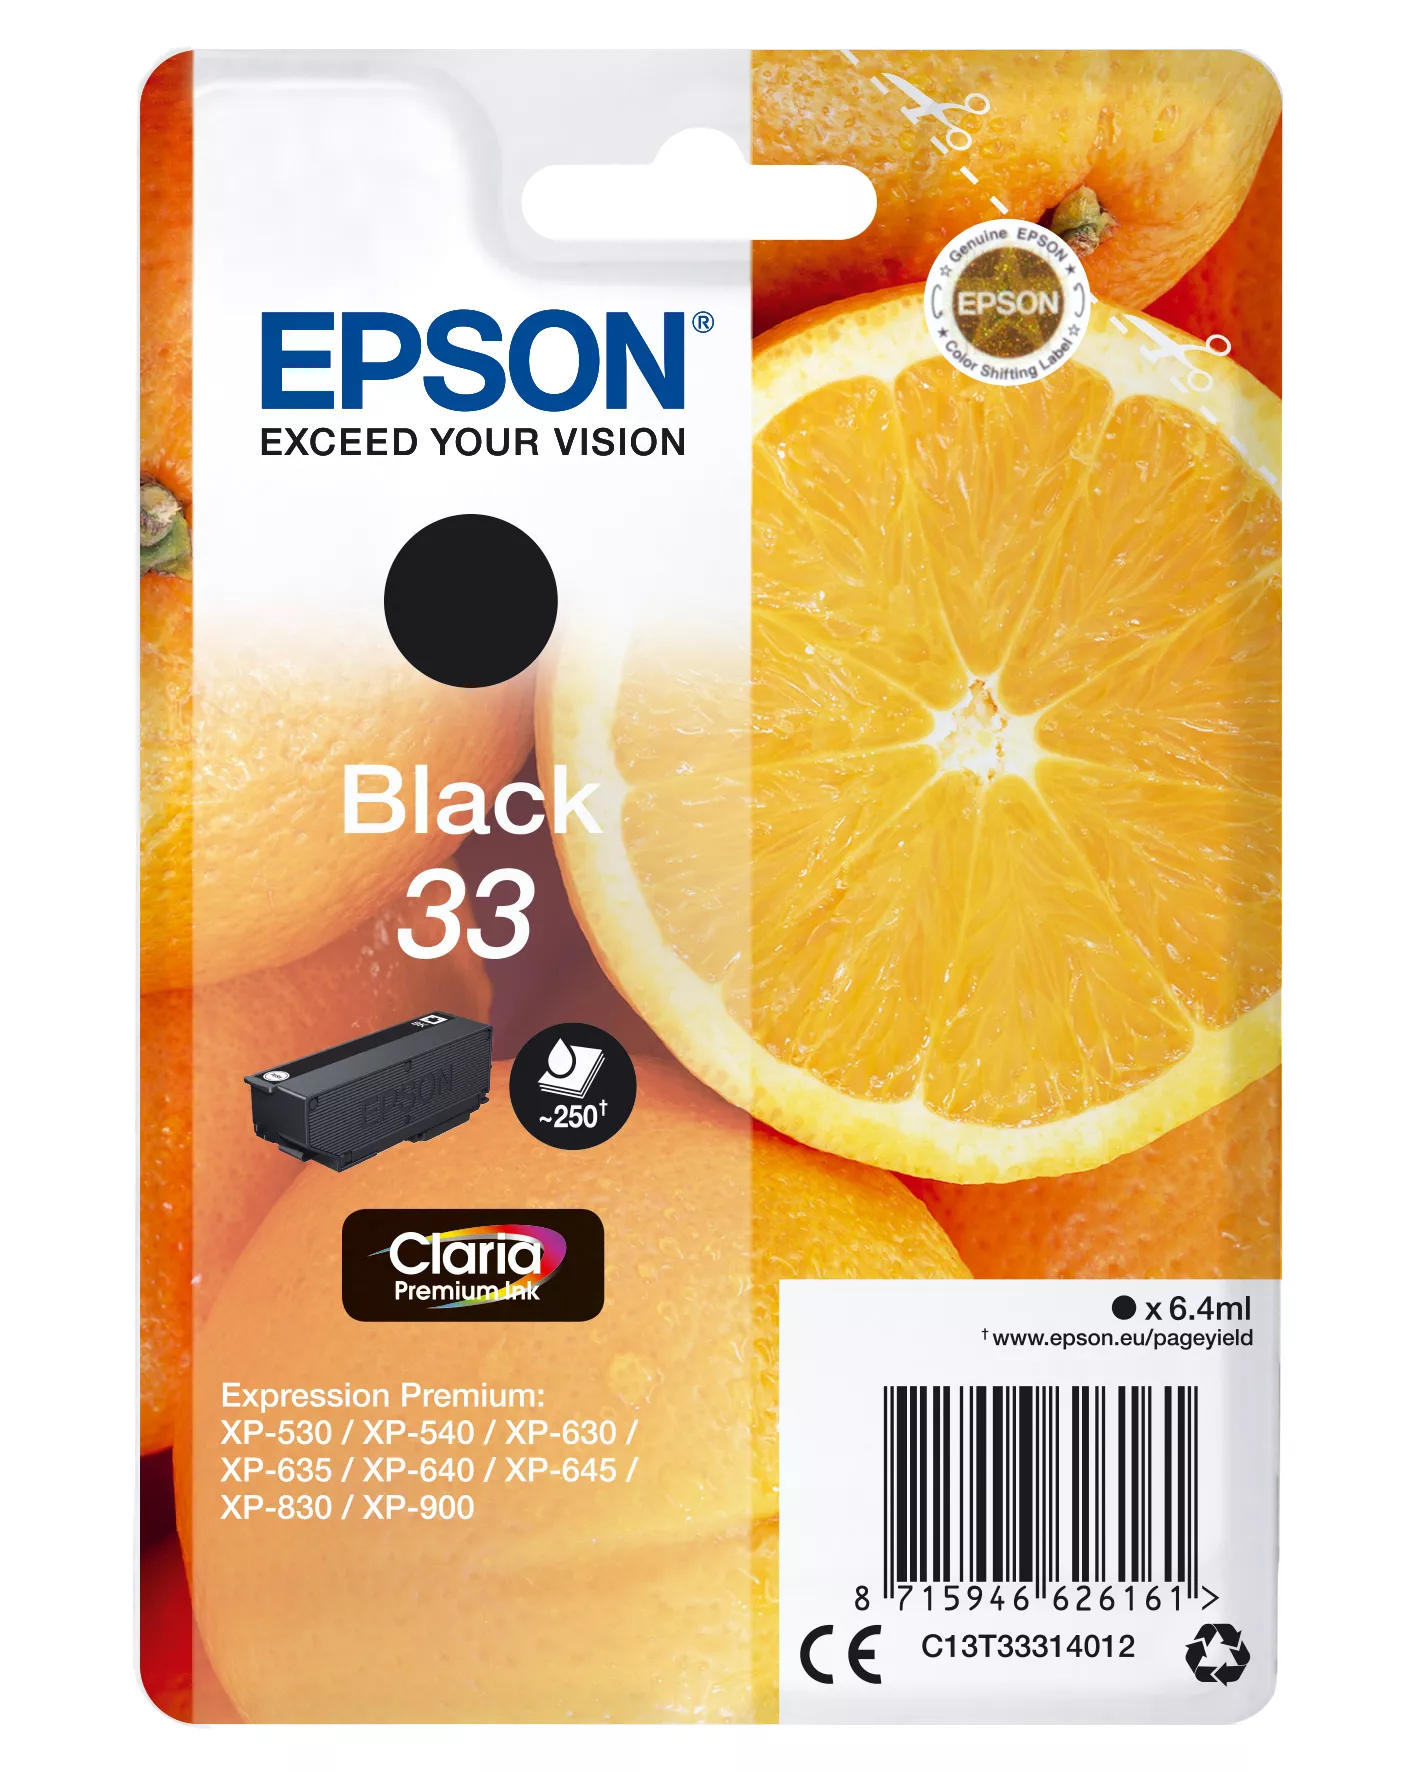 Achat EPSON Cartouche Oranges Encre Claria Premium Noir au meilleur prix